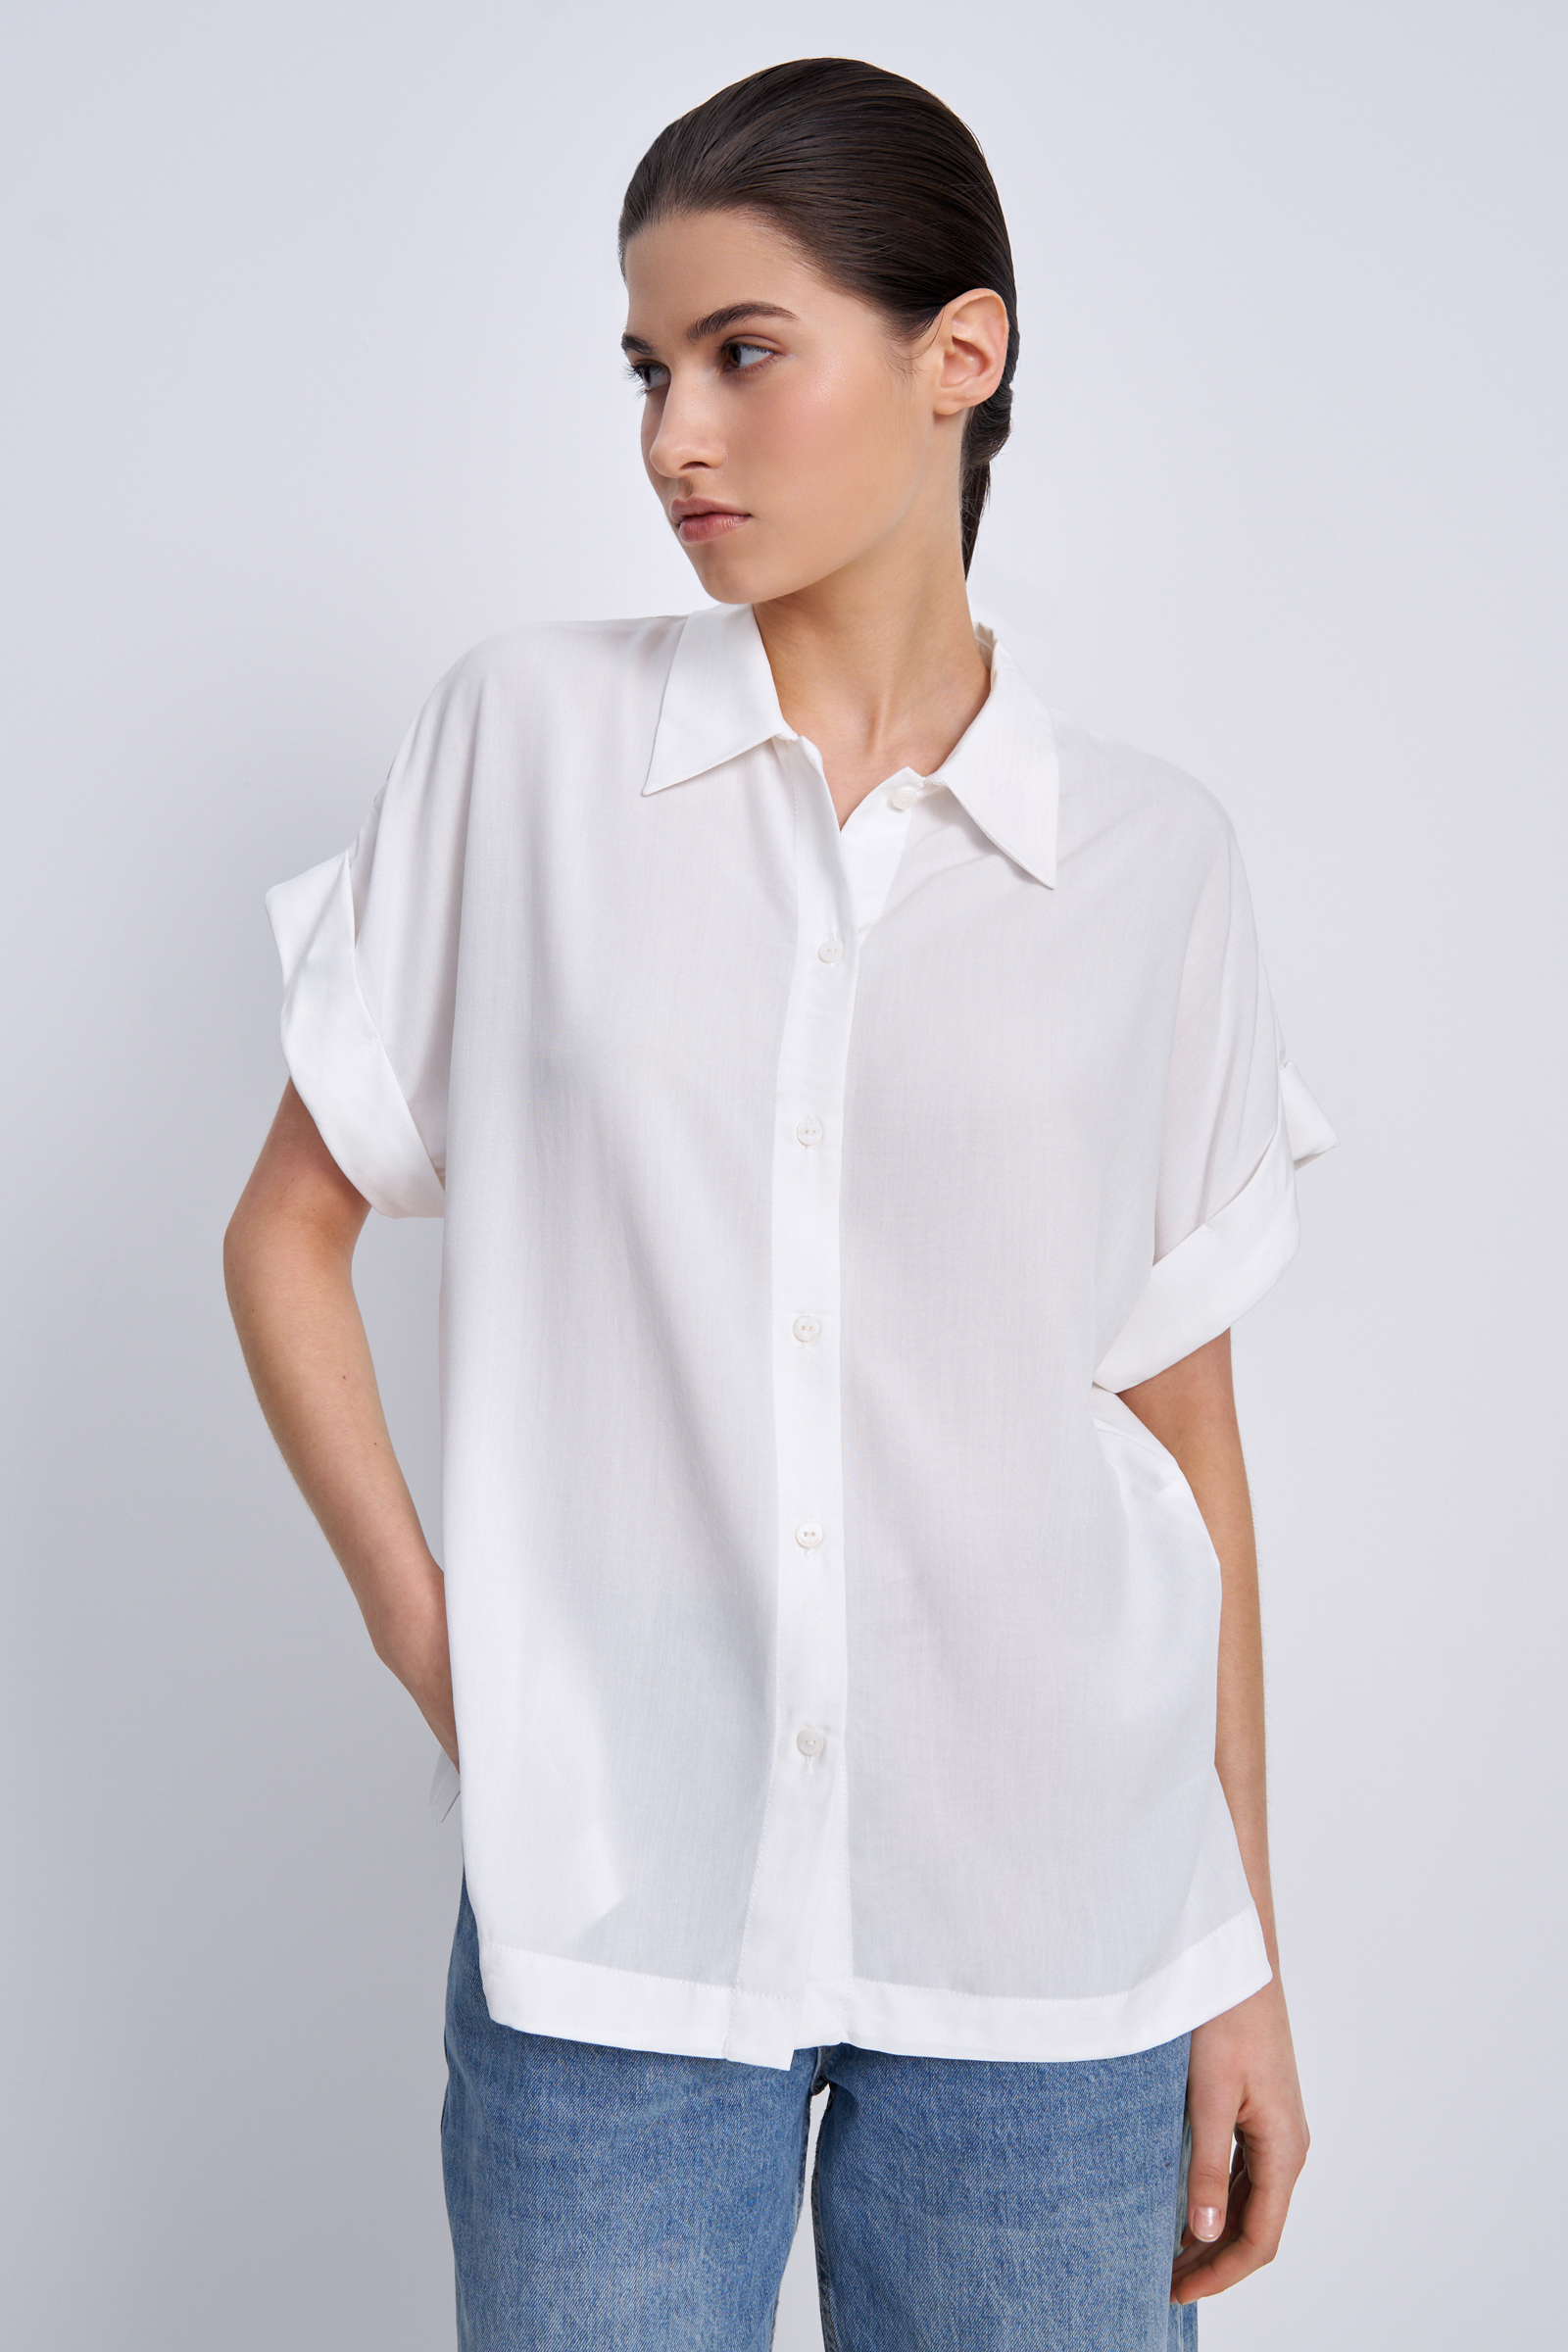 Рубашка женская Finn Flare BAS-10041 белая 3XL